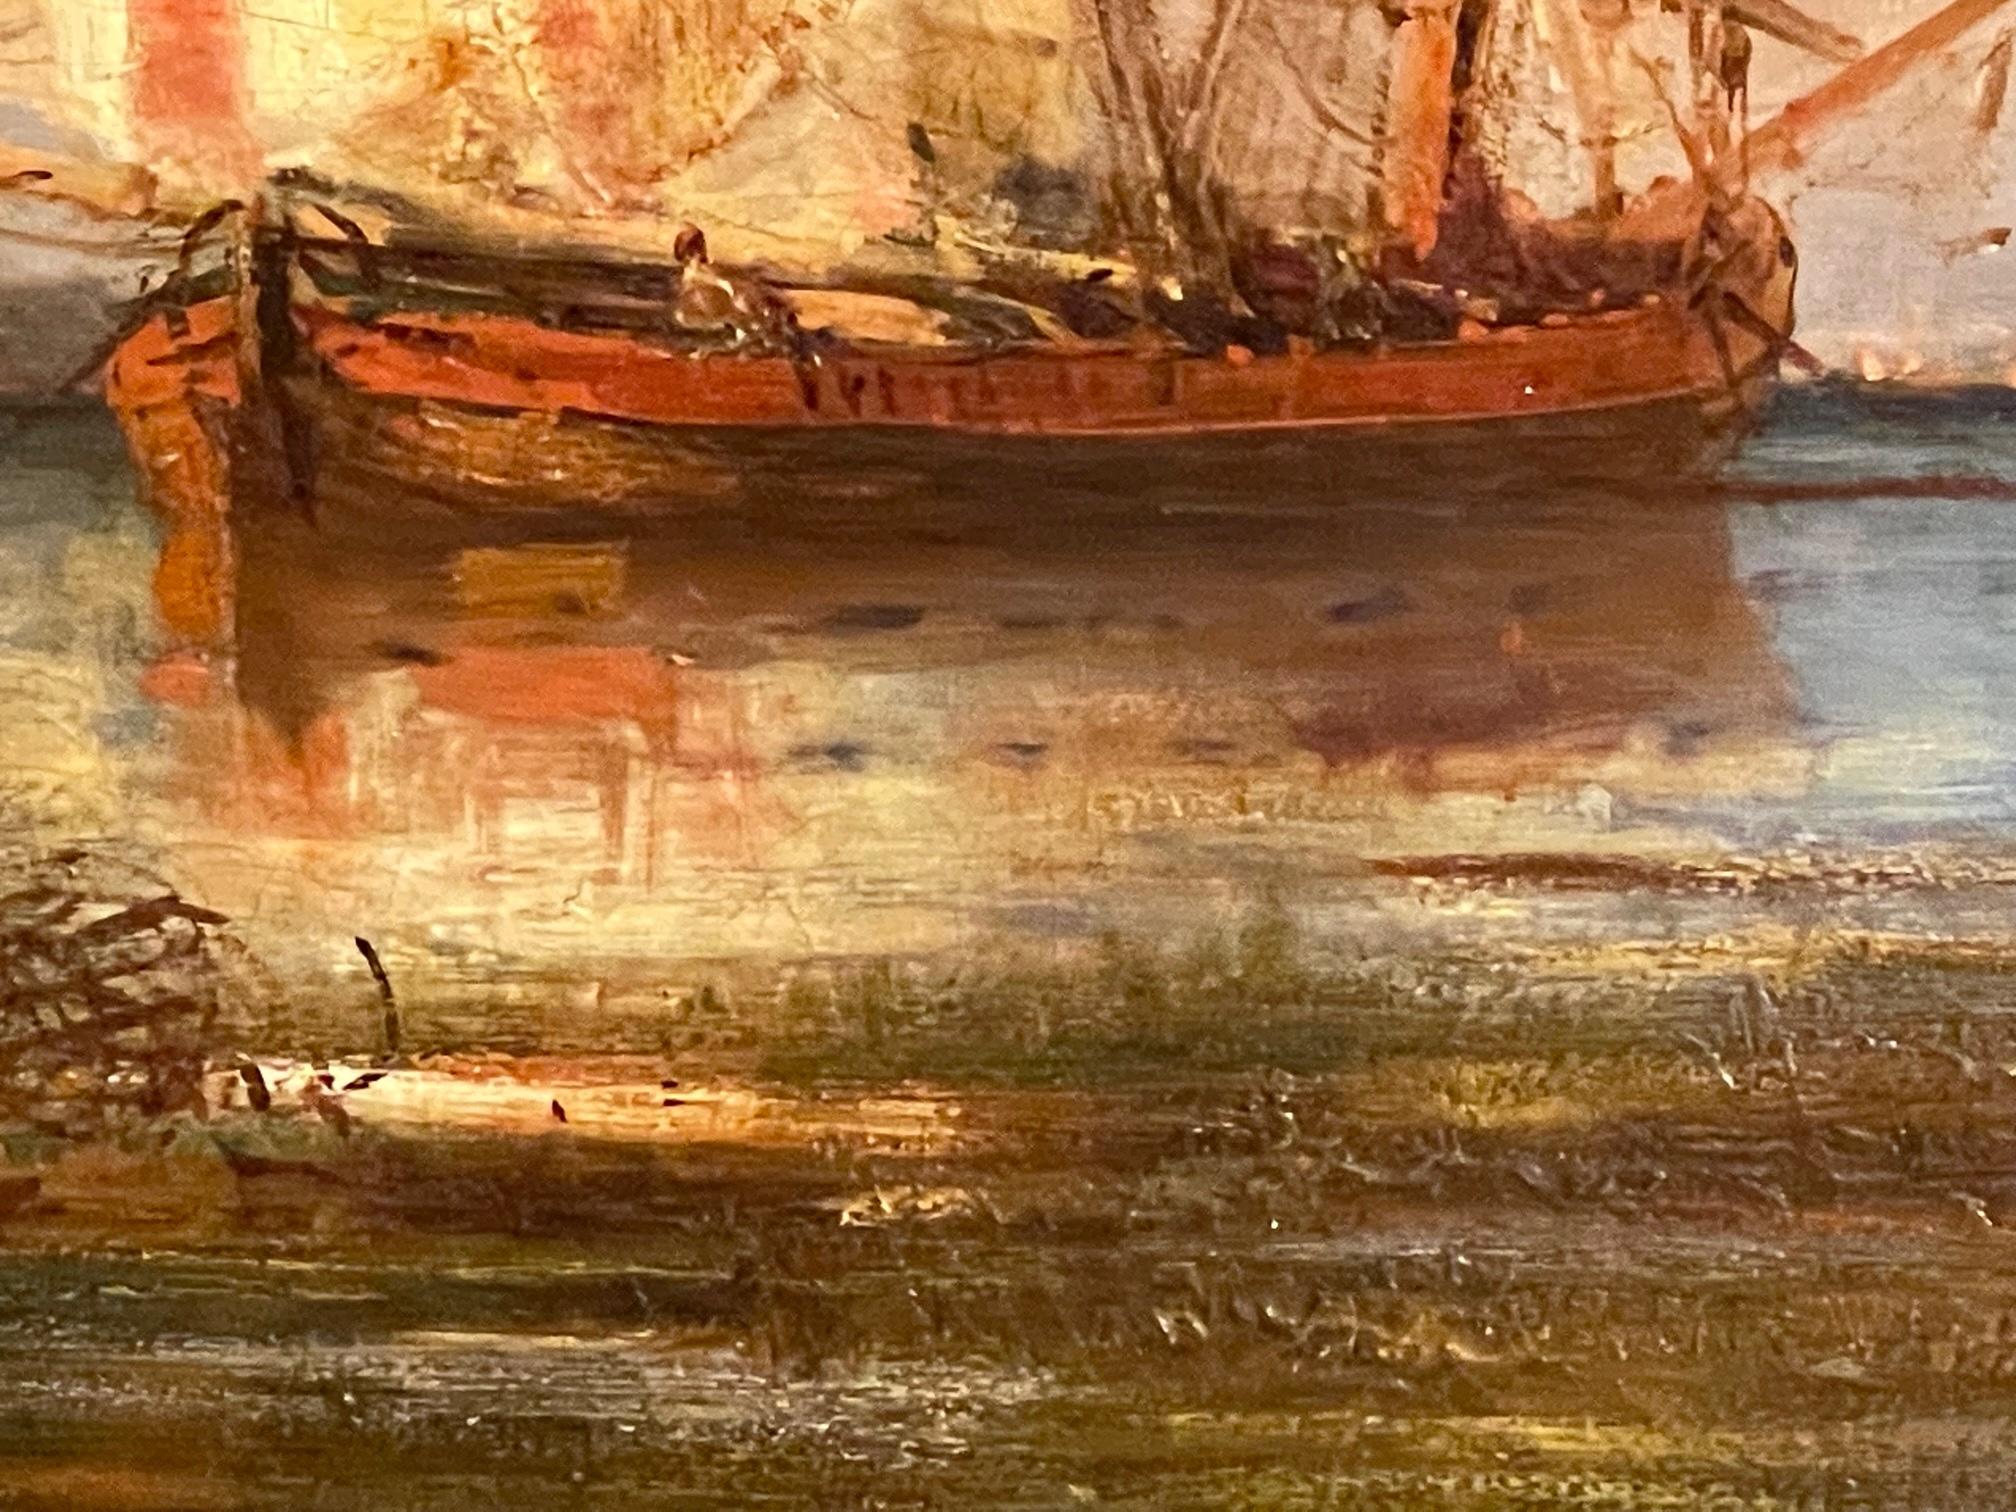 Französisches Ölgemälde auf Leinwand aus dem 19. Jahrhundert von Paul Charles Emmanuel Gallard-Lepinay (1842-1885), das Schiffe an der venezianischen Küste zeigt.  Gallard-Lepinay ist bekannt für seine maritimen Werke, vor allem in Venedig, aber